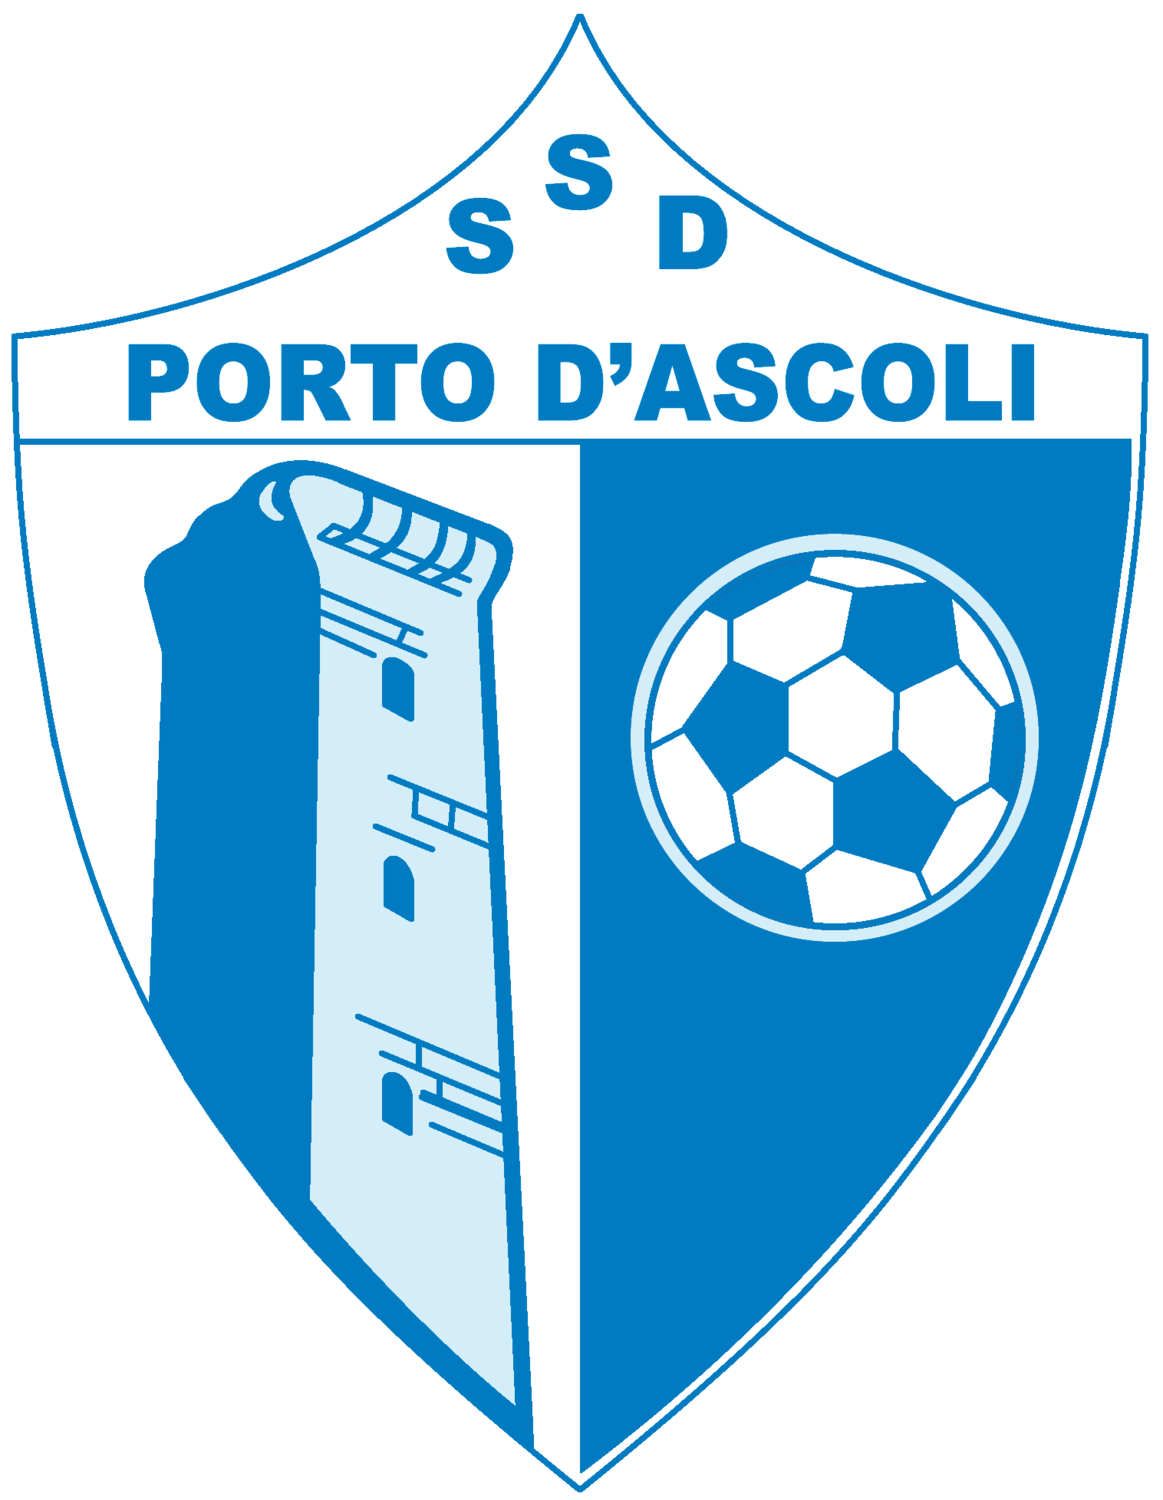 Wappen SSD Porto D'Ascoli diverse  99516